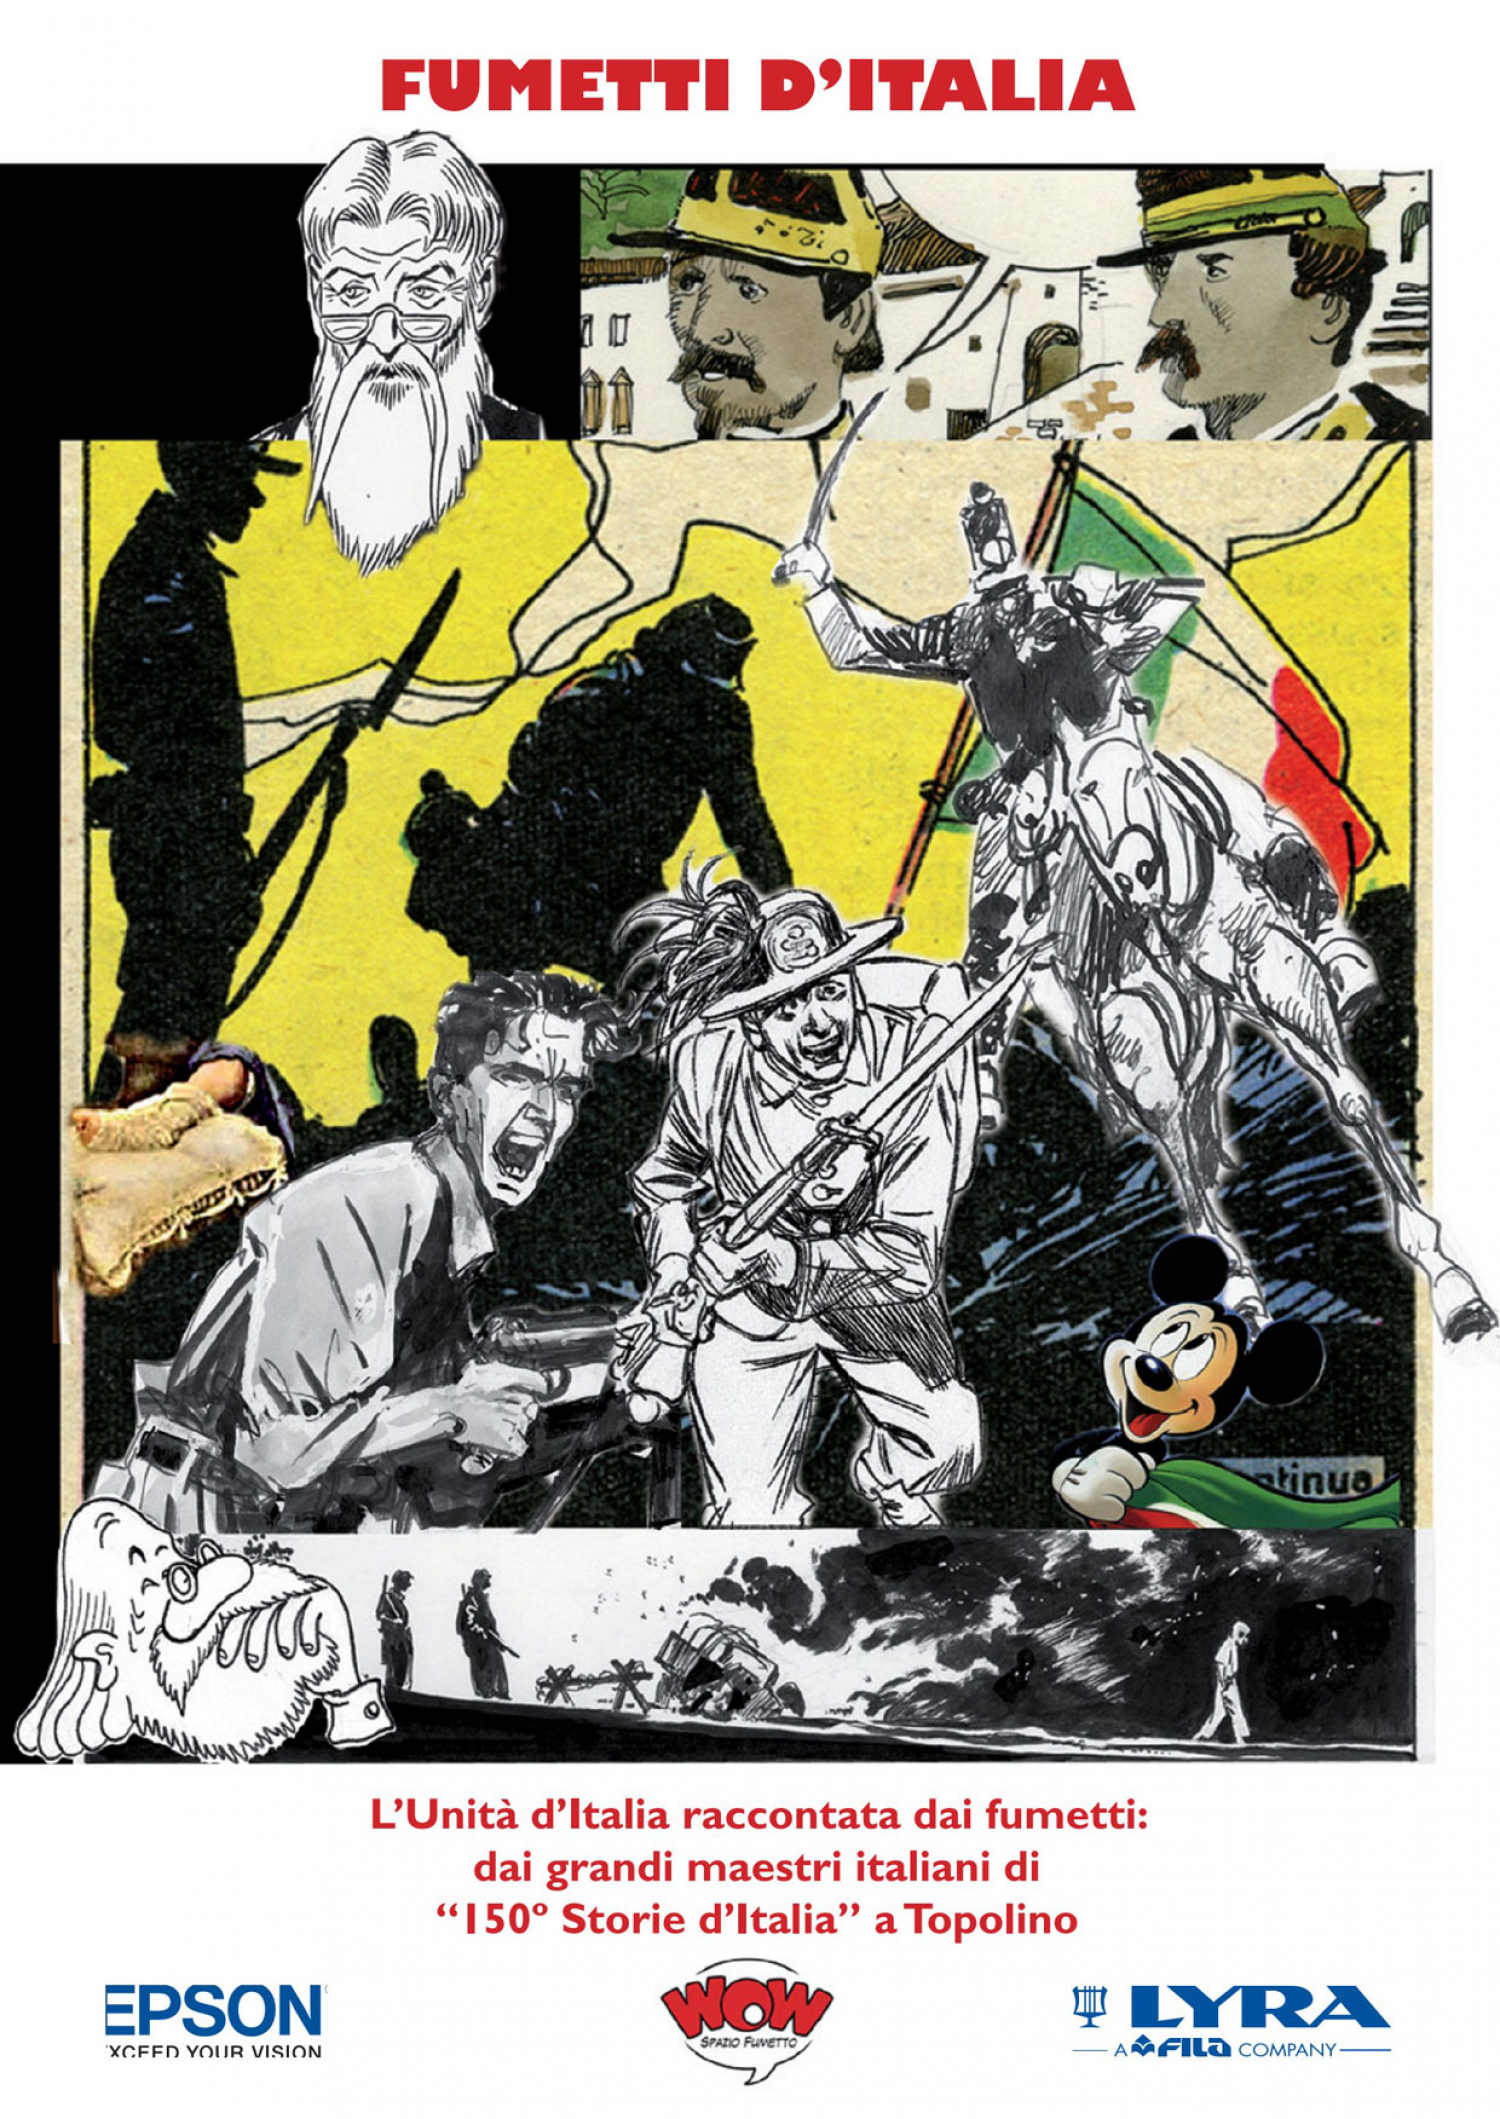 <p>In occasione dei 150 anni dell&#39;Unit&agrave; d&#39;Italia la mostra presenta una selezione di tavole originali di Sergio Toppi, Ivo Milazzo, Carlo Ambrosini e Pasquale Frisenda tratti dal volume &ldquo;150&deg; Storie d&#39;Italia&rdquo; oltre a un excursus su come l&#39;editoria a fumetti ha raccontato la storia del nostro Risorgimento e a un omaggio umoristico al tema.</p>